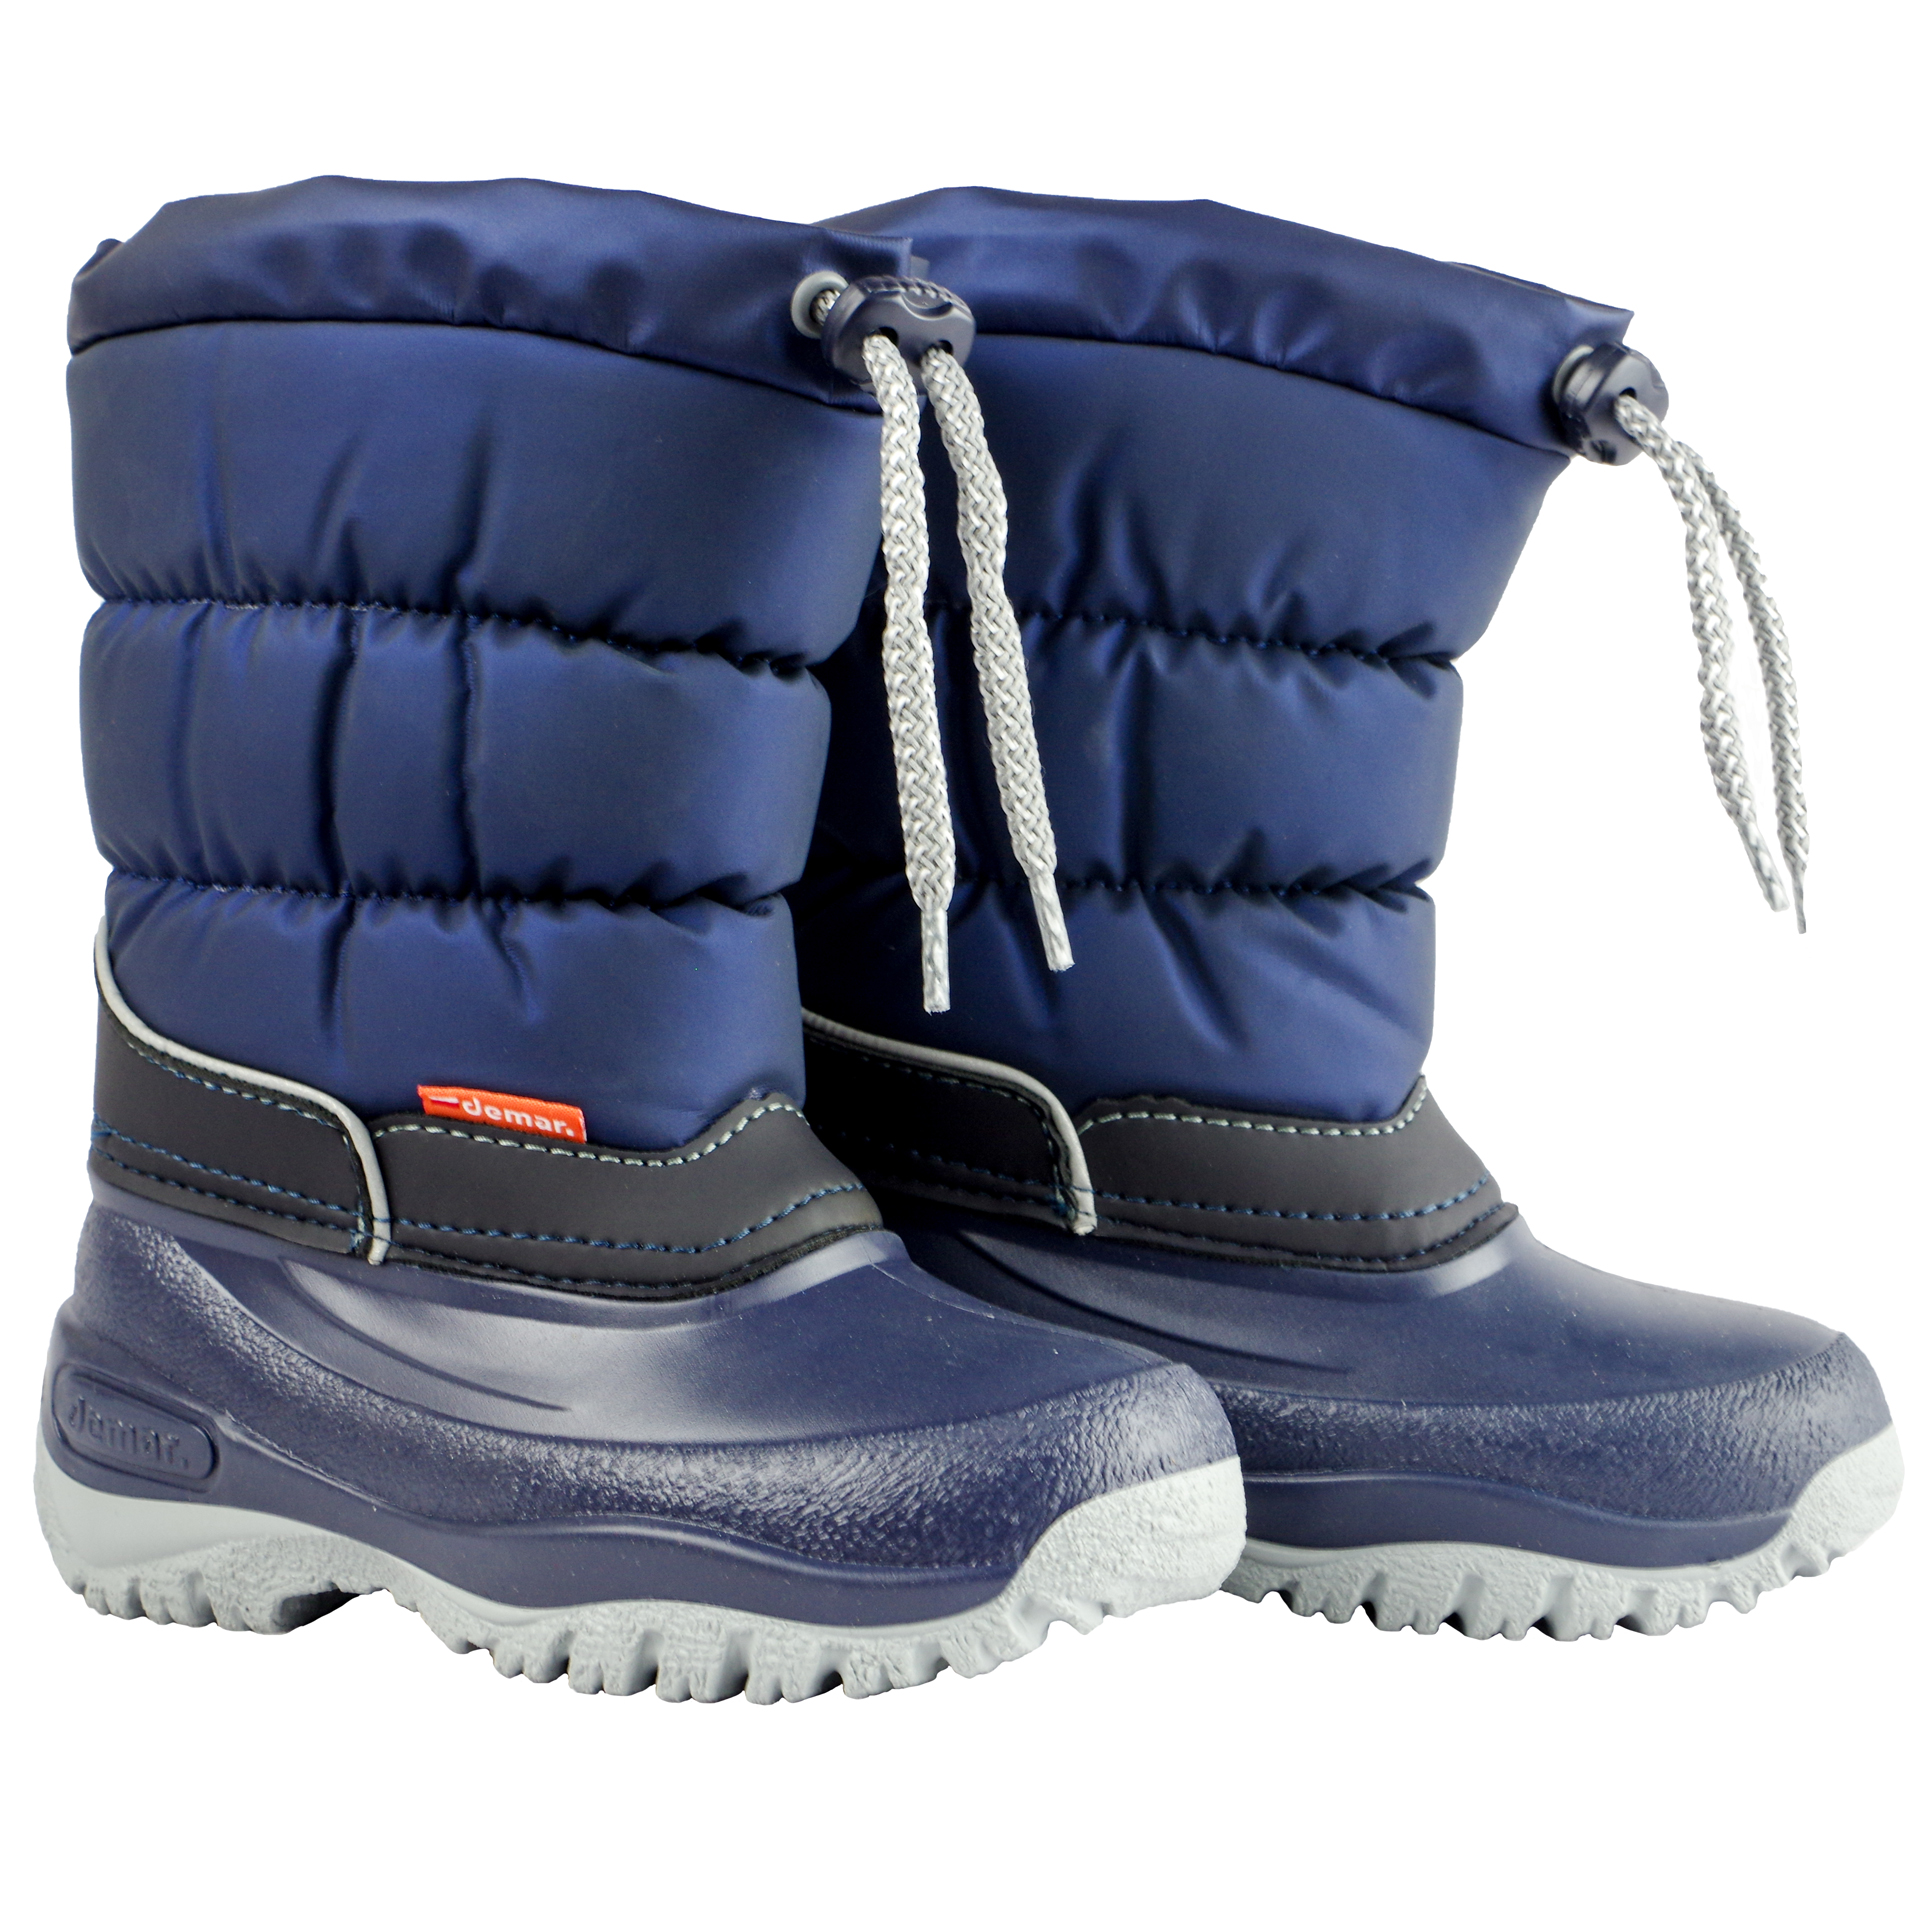 Зимові чоботи DEMAR (1534) для дівчинки, матеріал ПВХ, Синій, Чорний колір, 25-35 розміри. Фото 8